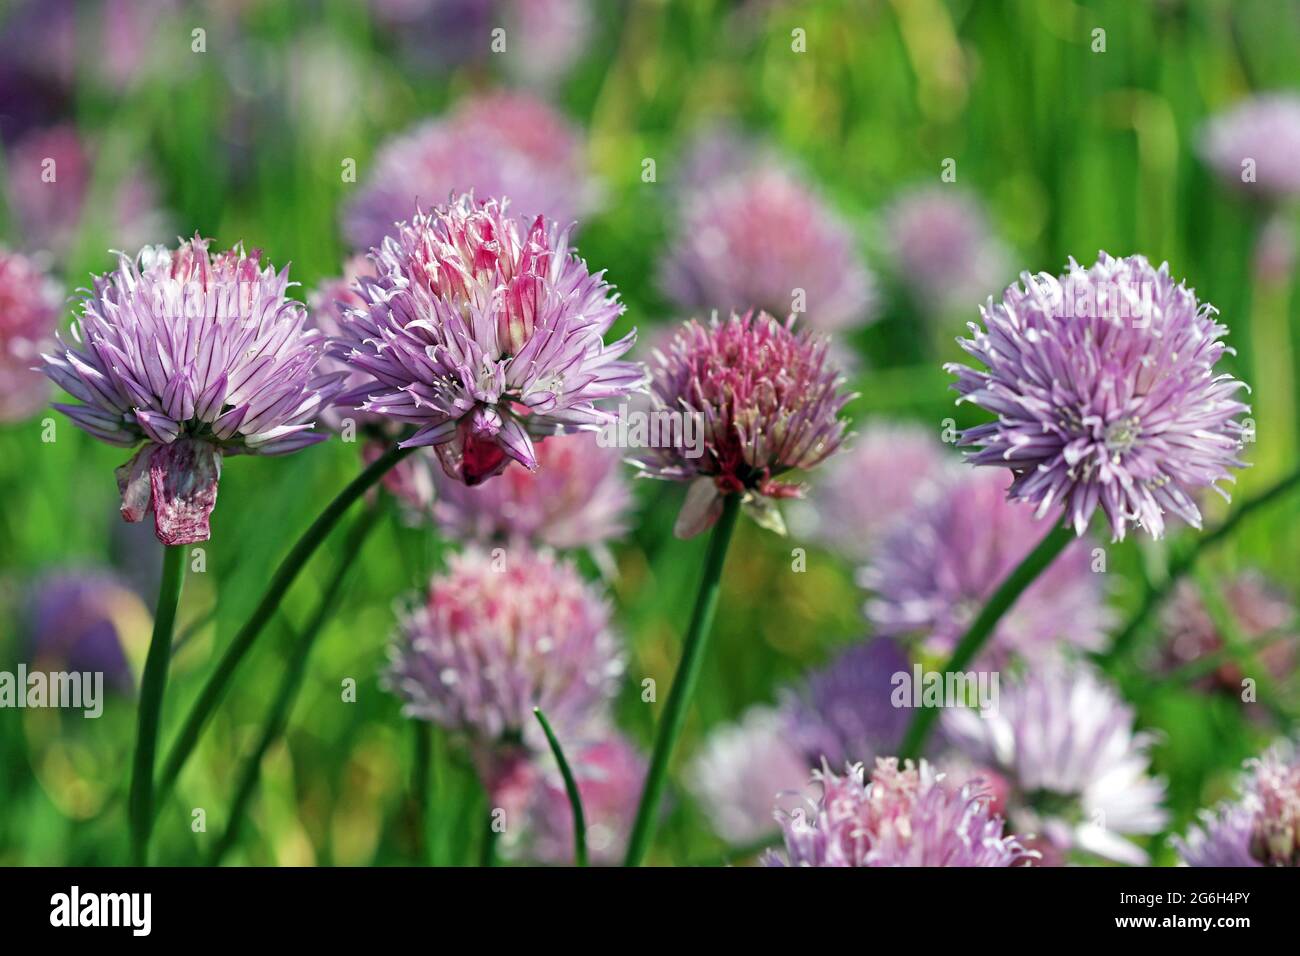 Un grupo de cebollino florido (Allium Schoenoprasum); pequeño allium de lavanda que tiene amplios usos culinarios. Fotografiado en un jardín inglés en junio Foto de stock